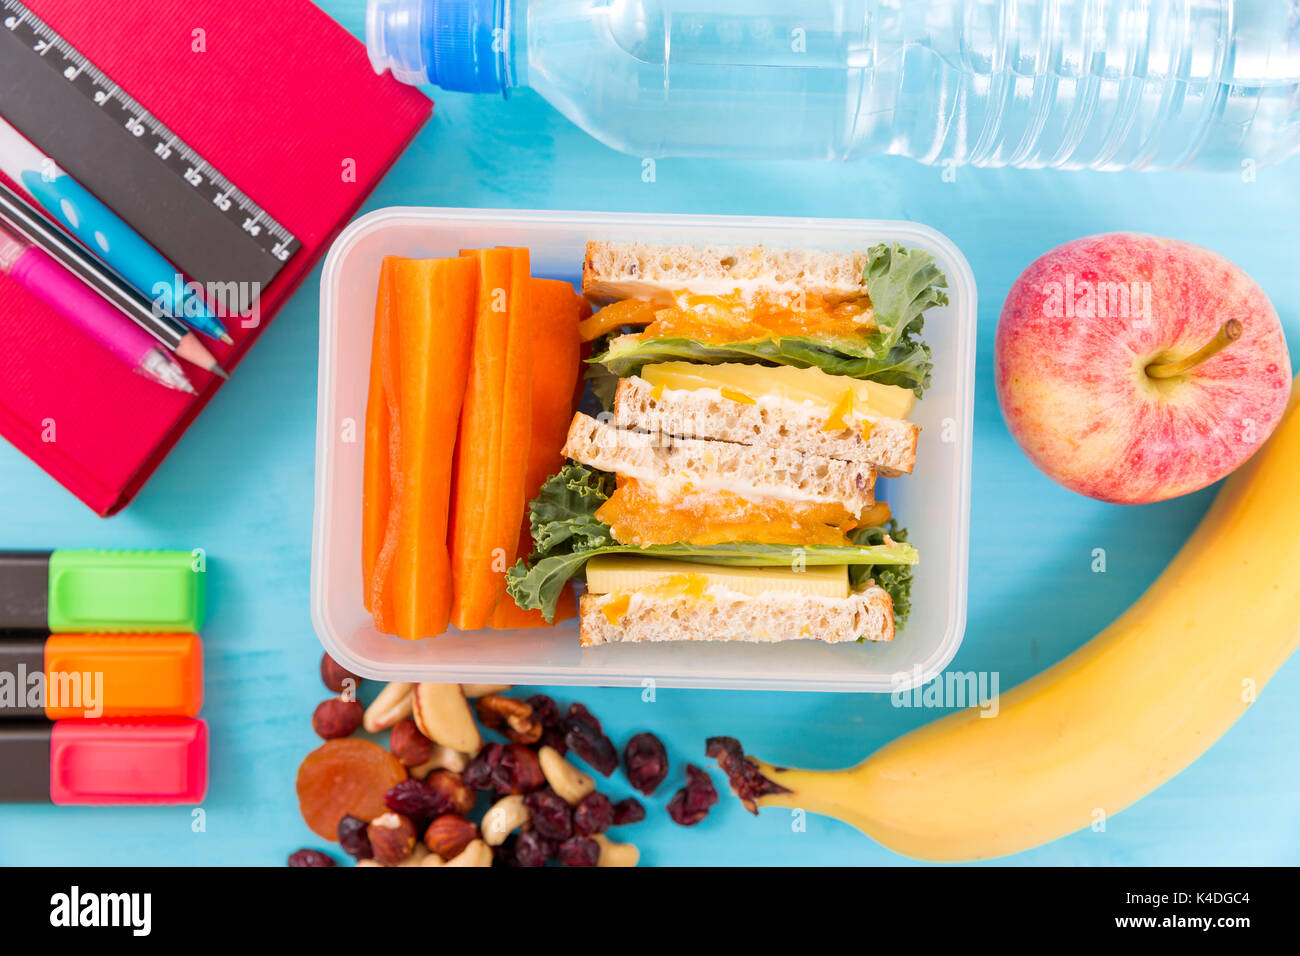 Scuola scatola di pranzo con sandwich, verdure, acqua, dadi e frutti su sfondo turchese. Abitudini alimentari sane concept Foto Stock